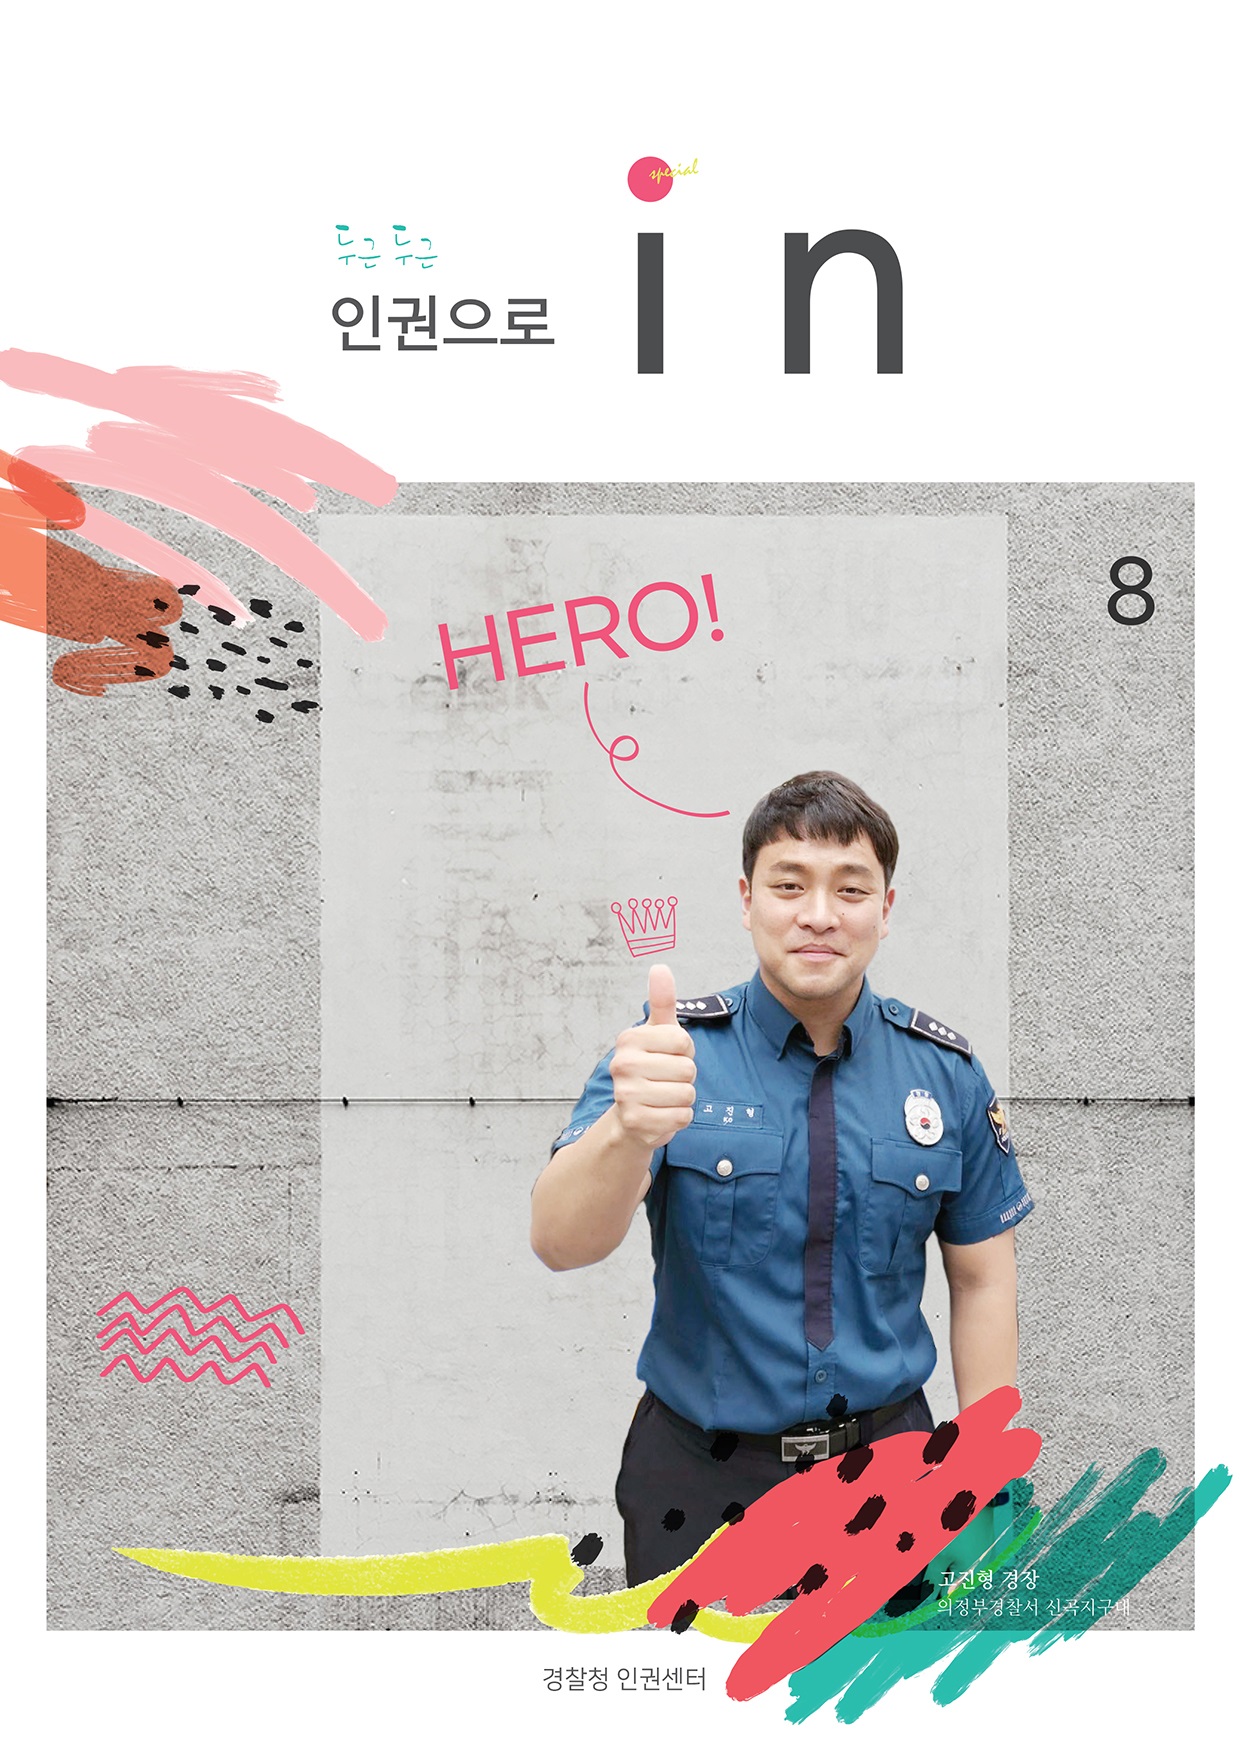 두근두근 인권으로 in
        HERO!
        고진형 경장 의정부경찰서 신곡지구대
        경찰청 인권센터